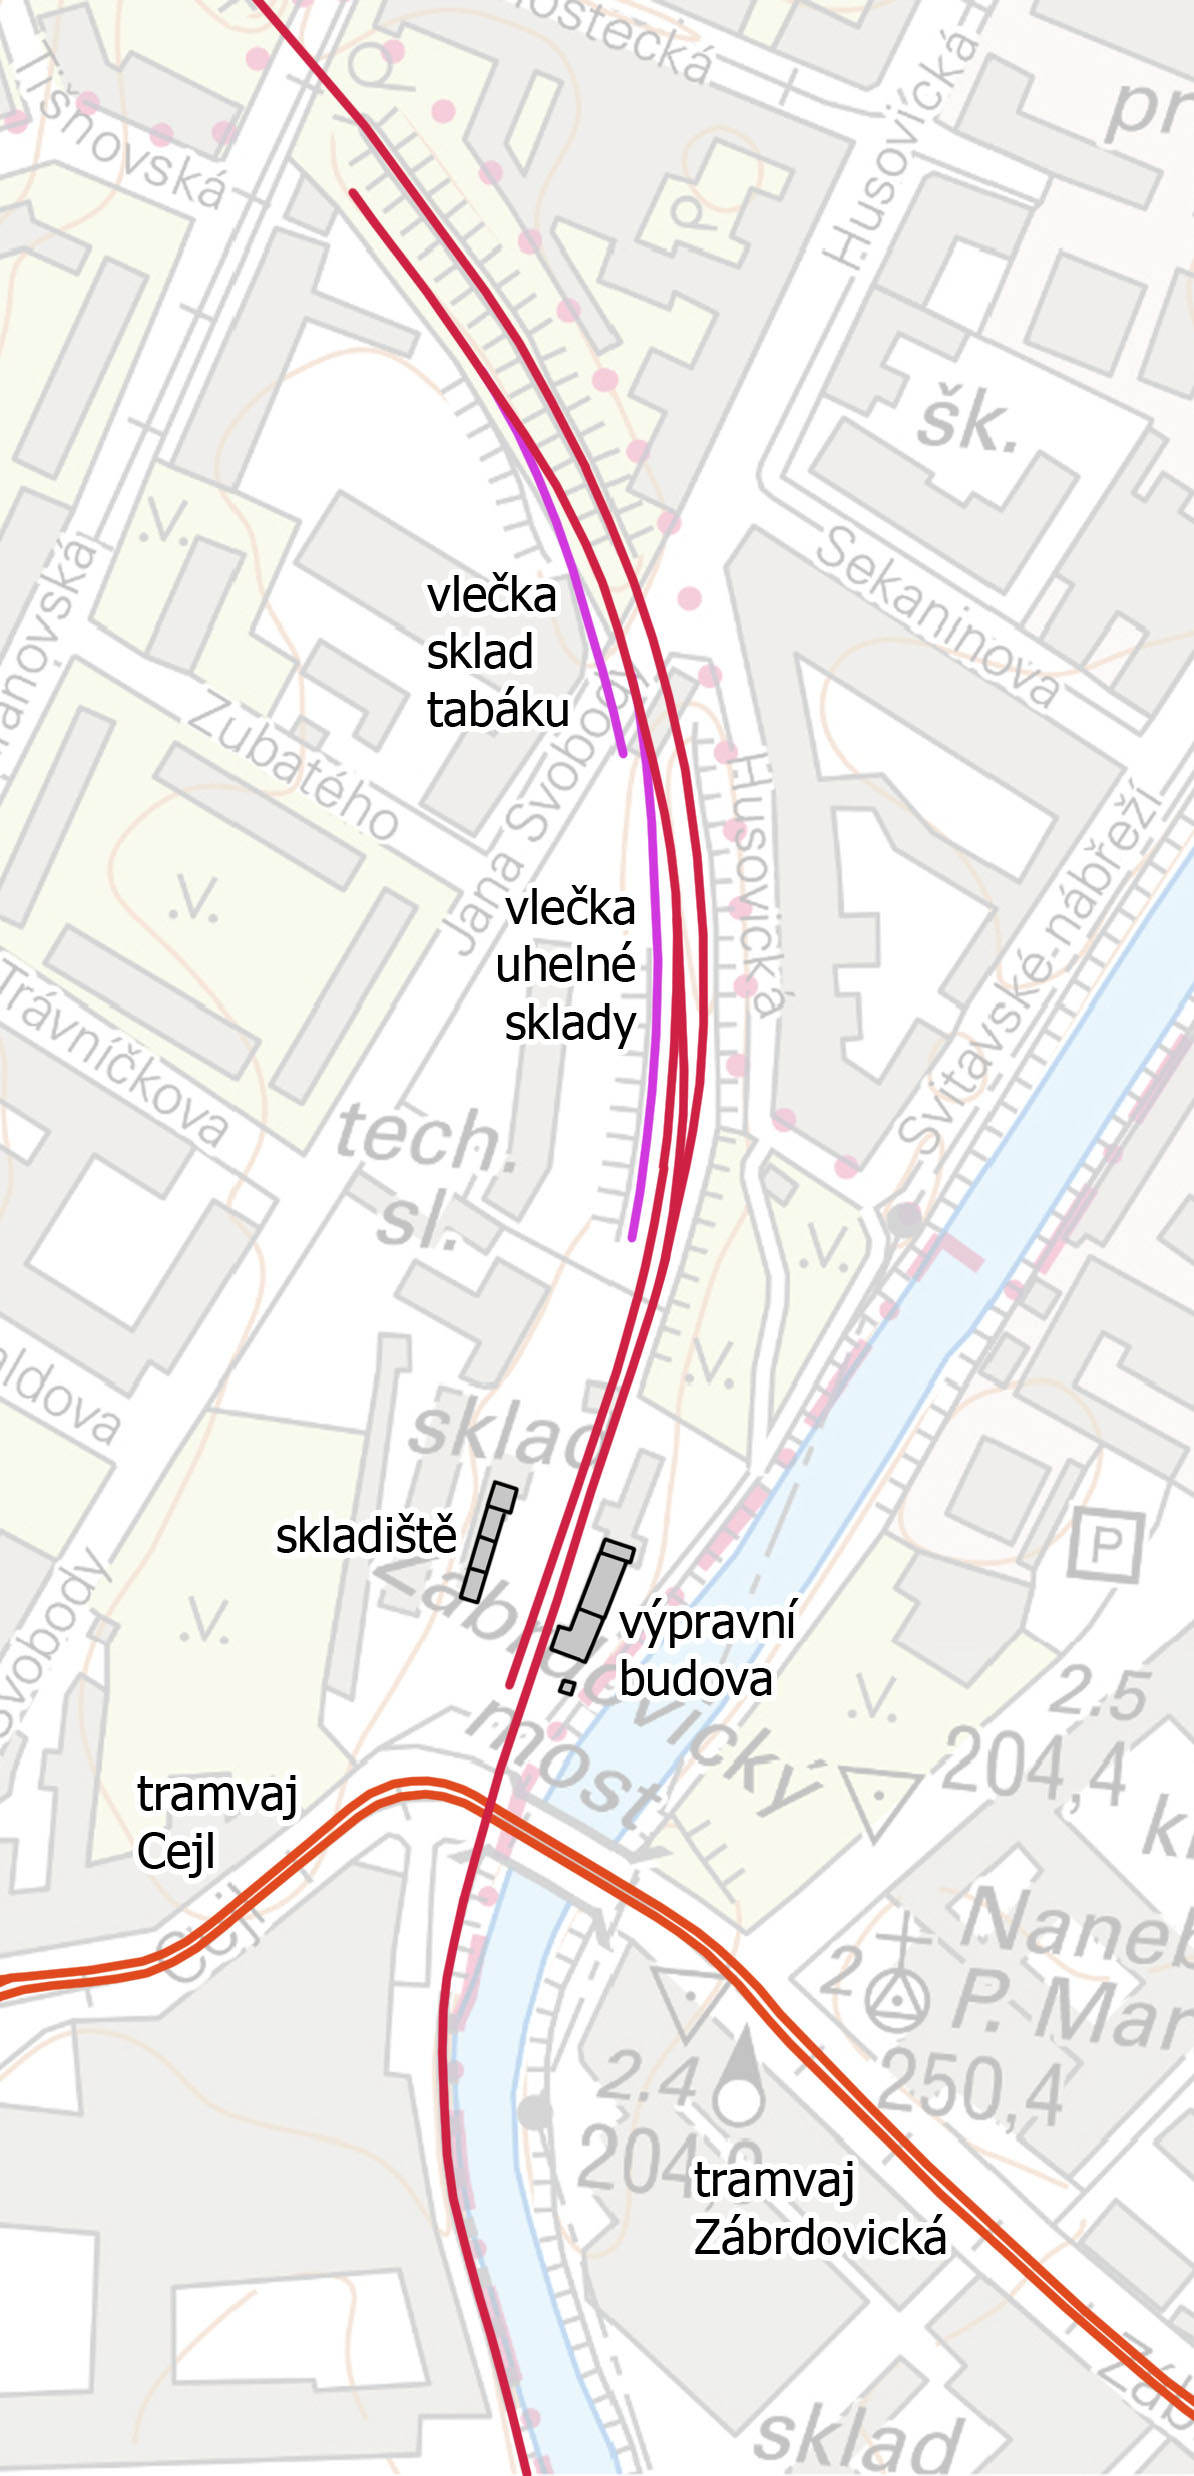 Na plánku z roku 2021 je vyznačena červeně původní dráha včetně kolejiště stanice, růžově dvojice z ní odbočujících vleček a oranžově tramvajová trať na Starou Osadu.